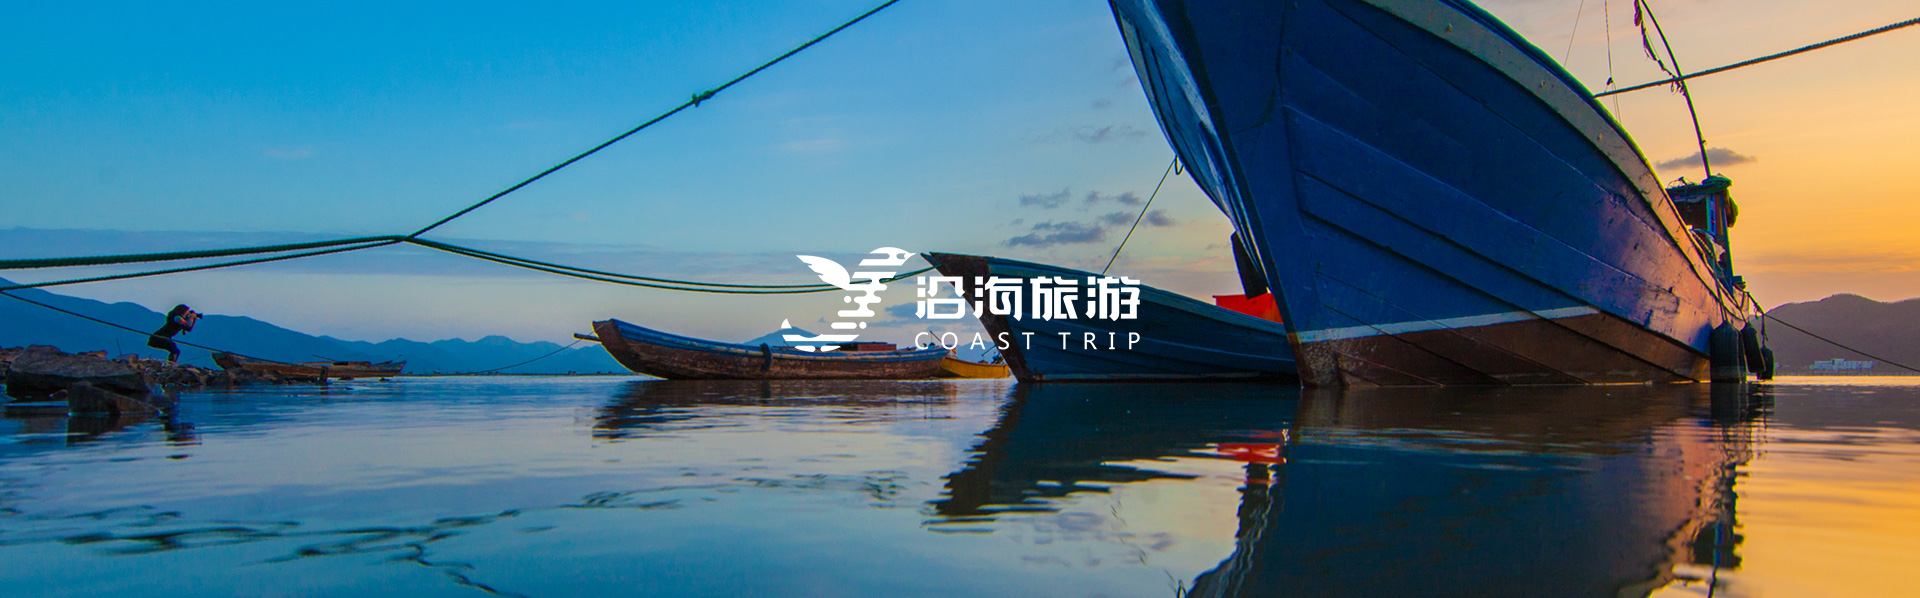 上海水利集团 - 沿海旅游